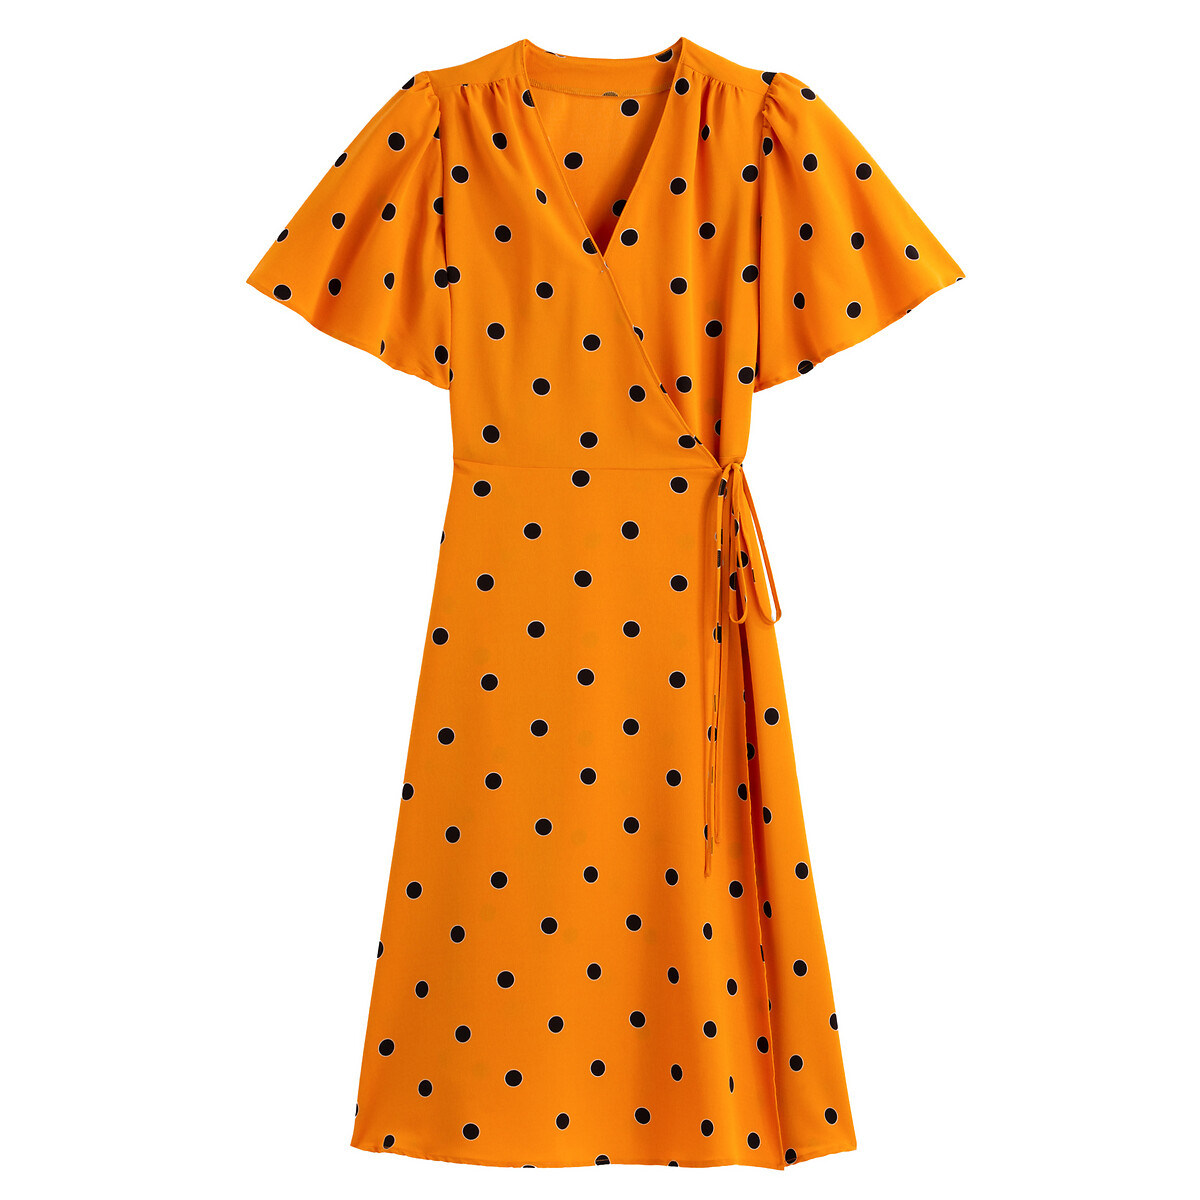 Платье LaRedoute С запахом принт в горошек 50 (FR) - 56 (RUS) желтый, размер 50 (FR) - 56 (RUS) С запахом принт в горошек 50 (FR) - 56 (RUS) желтый - фото 5